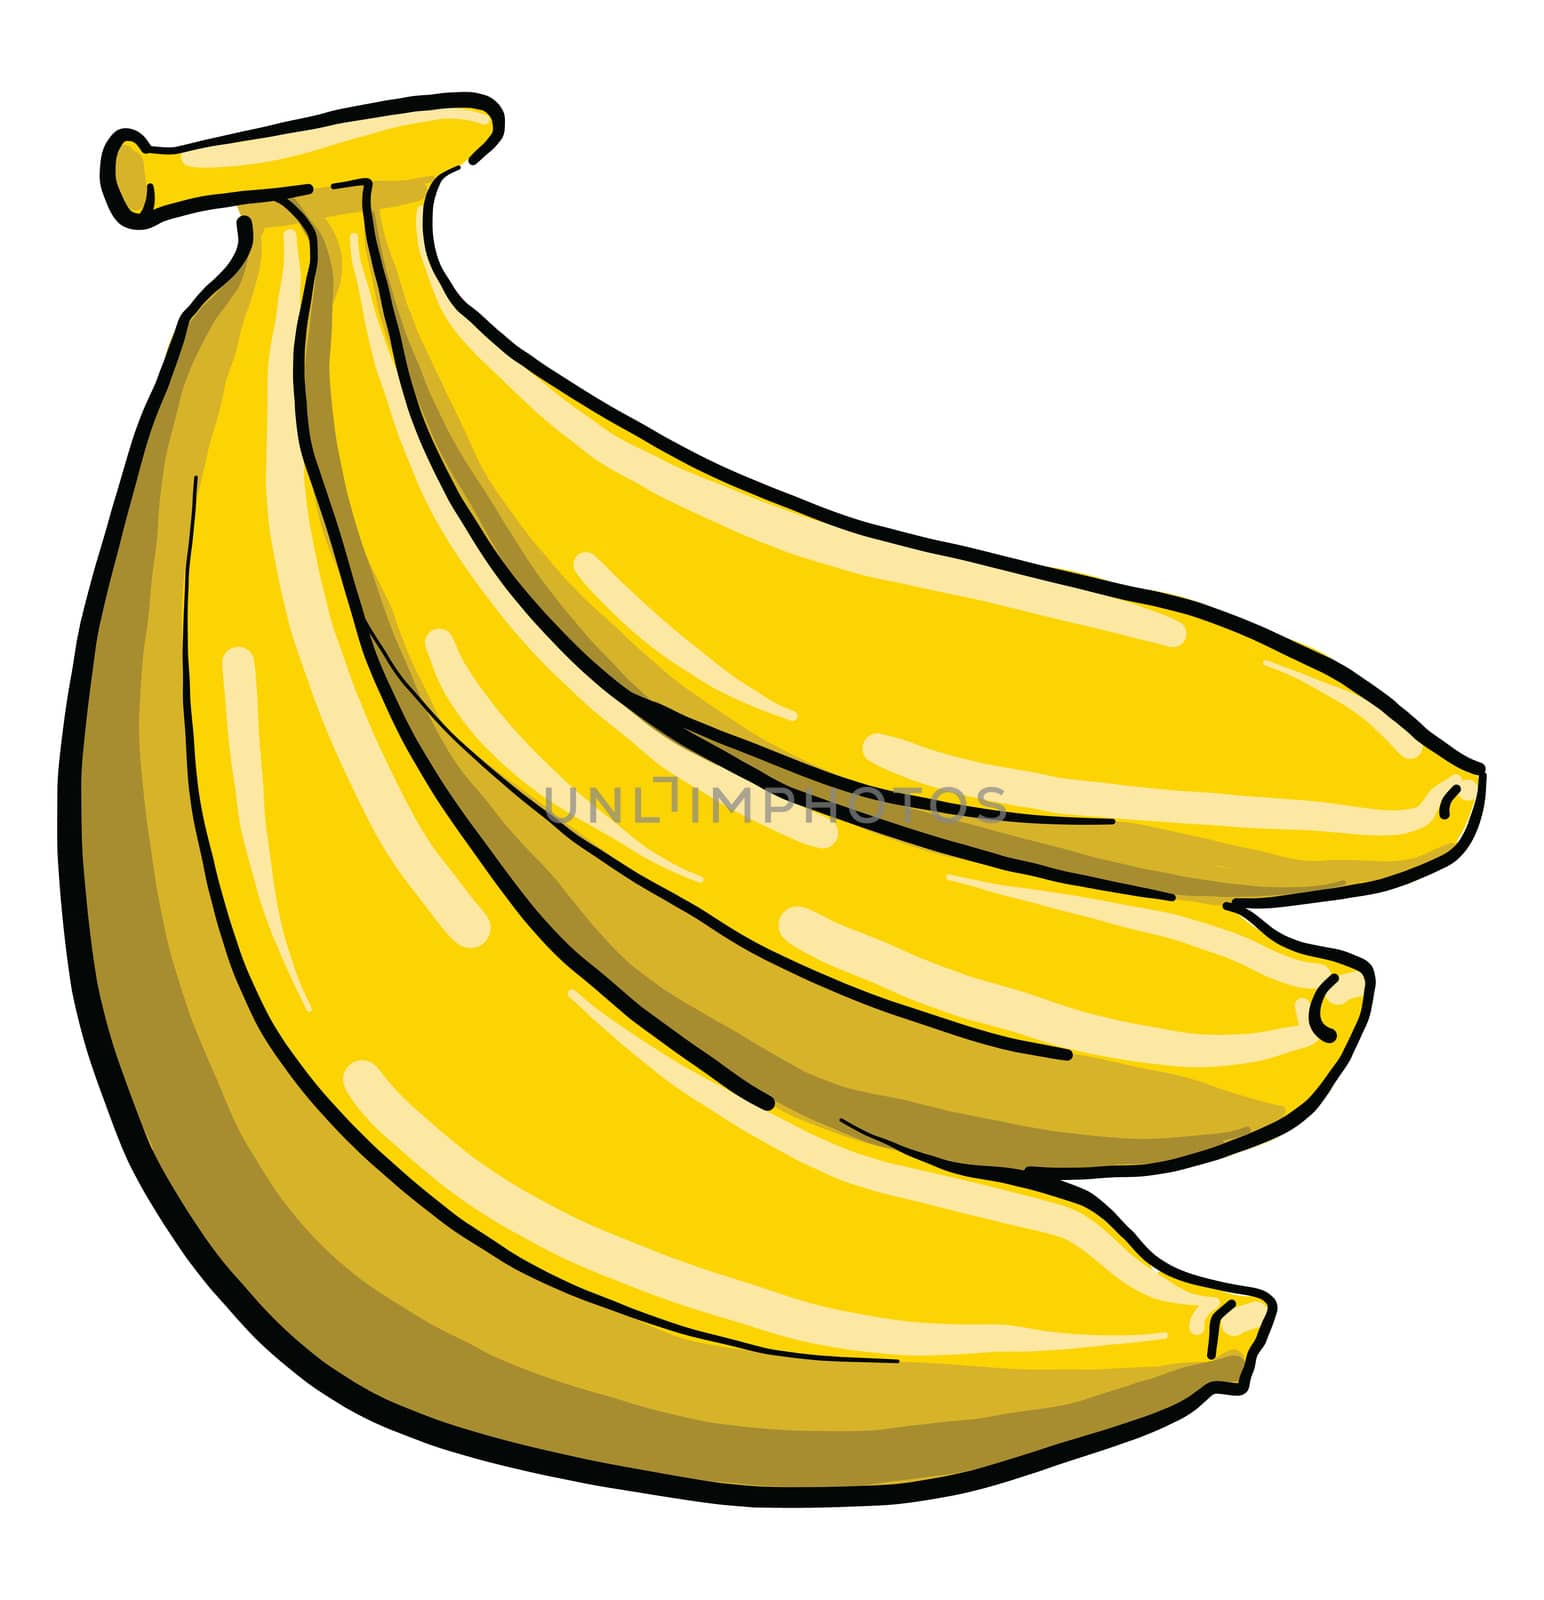 Pack of bananas , illustration, vector on white background by Morphart